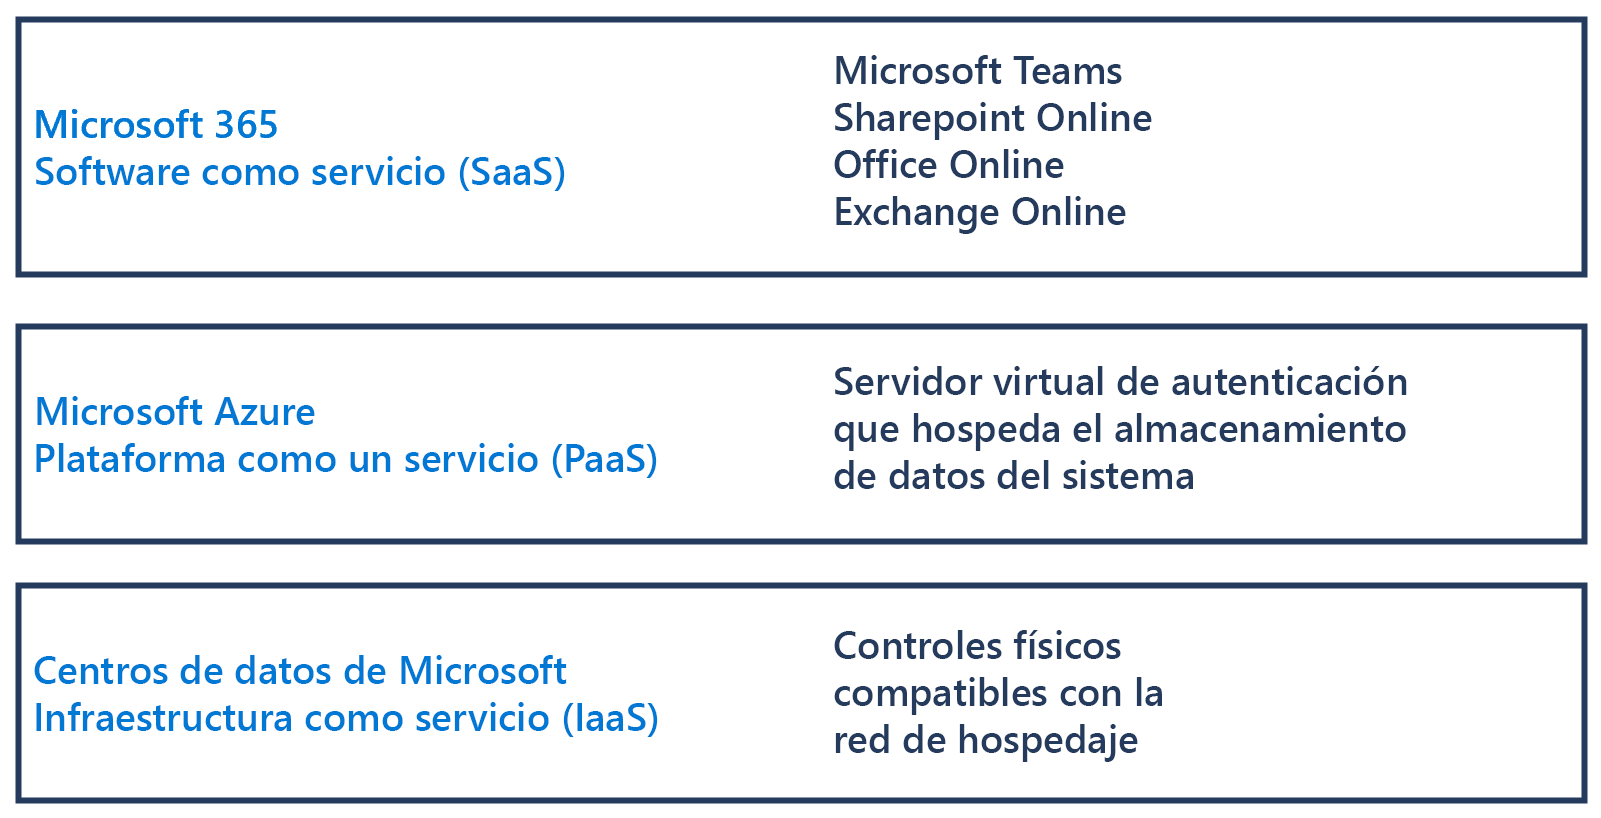 Diagrama que muestra las diferencias entre el software como servicio de Microsoft 365, la plataforma como servicio de Microsoft Azure y la infraestructura de centros de datos de Microsoft como servicio.